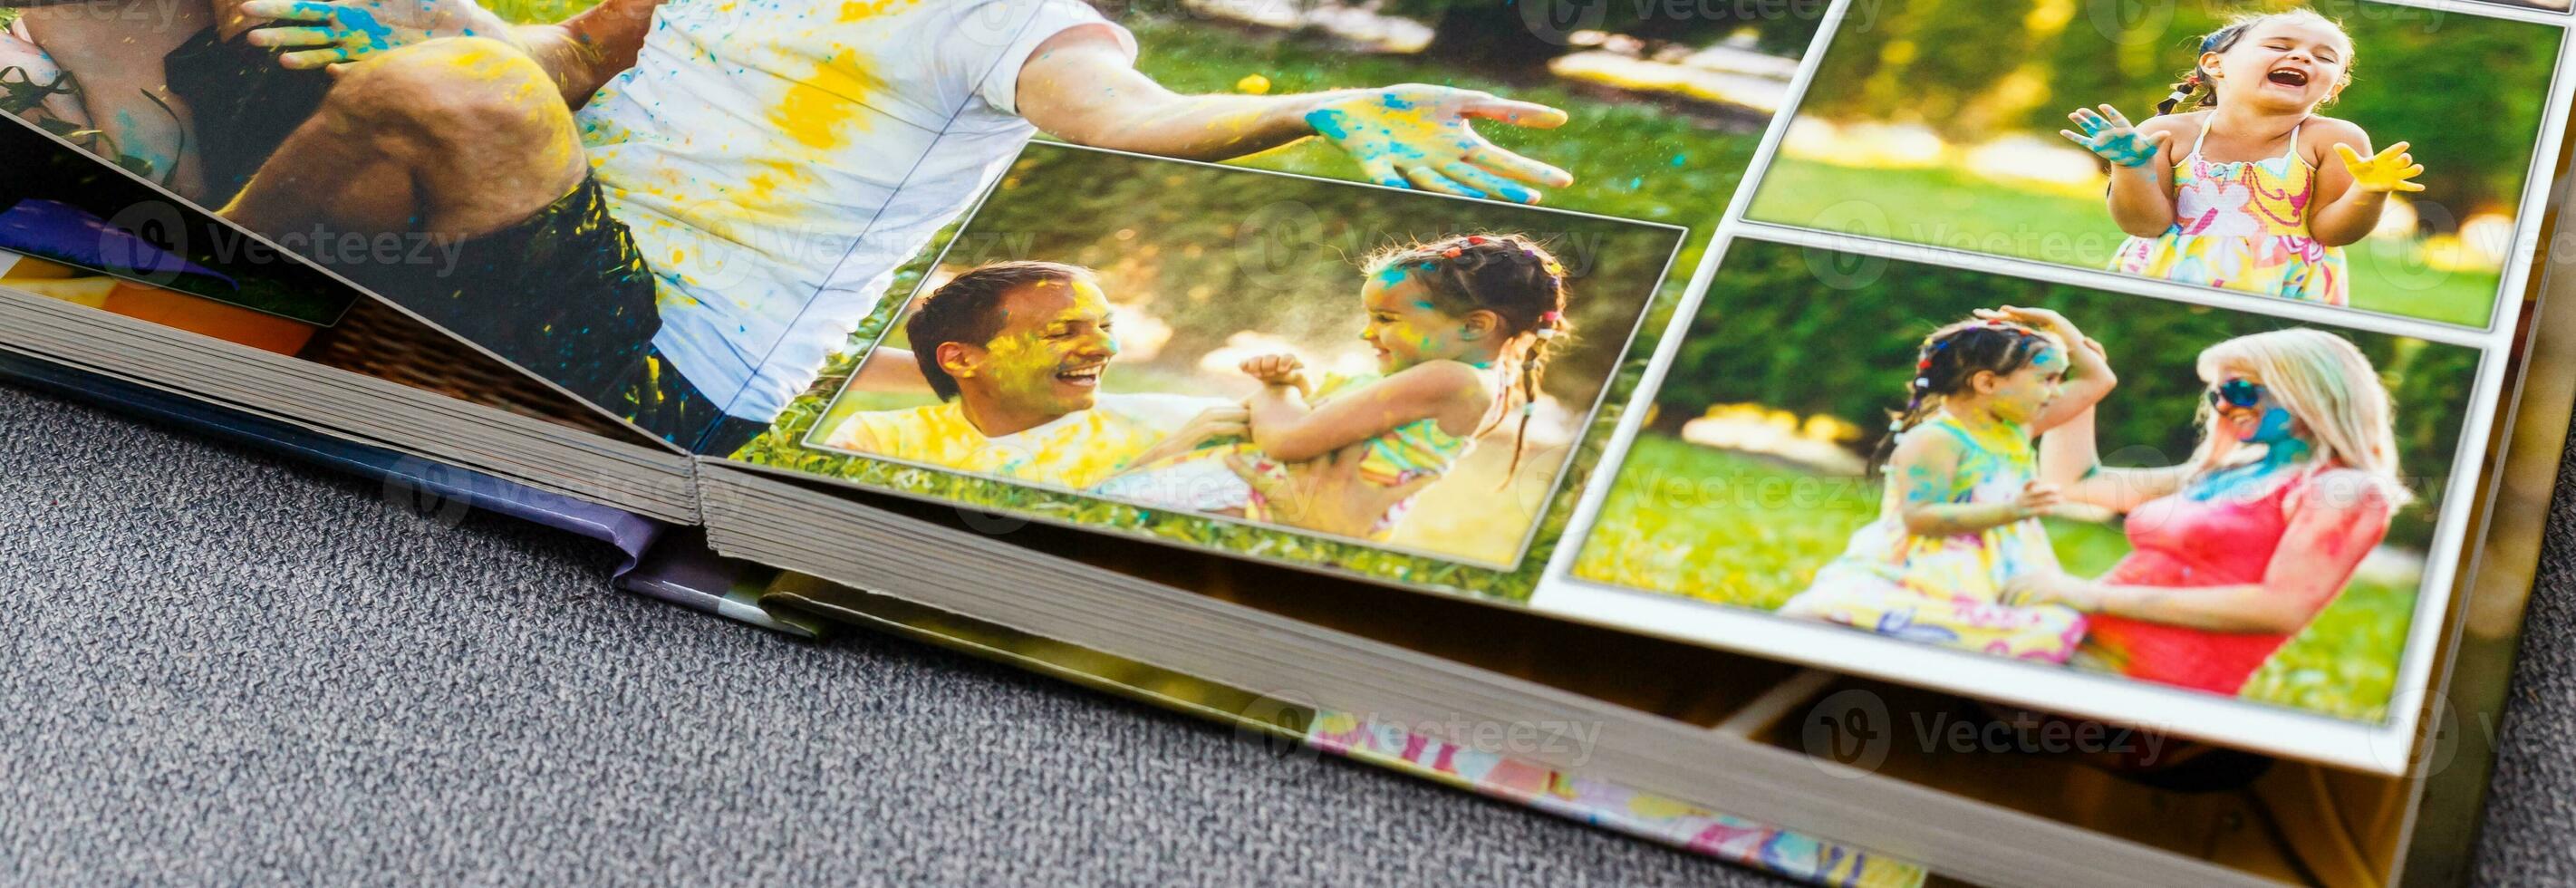 fotoboek album Aan dek tafel met reizen foto's foto